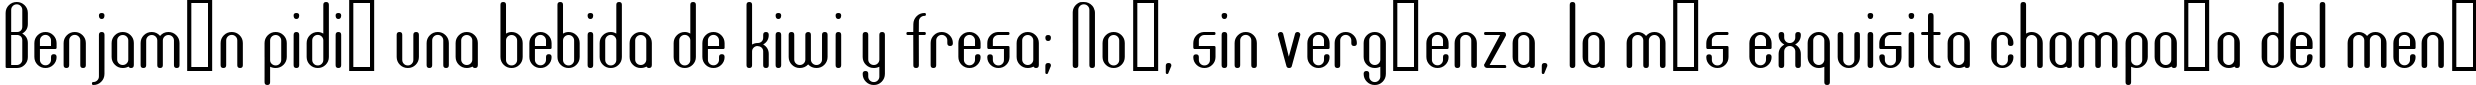 Пример написания шрифтом DF667  Plastic Jesus текста на испанском